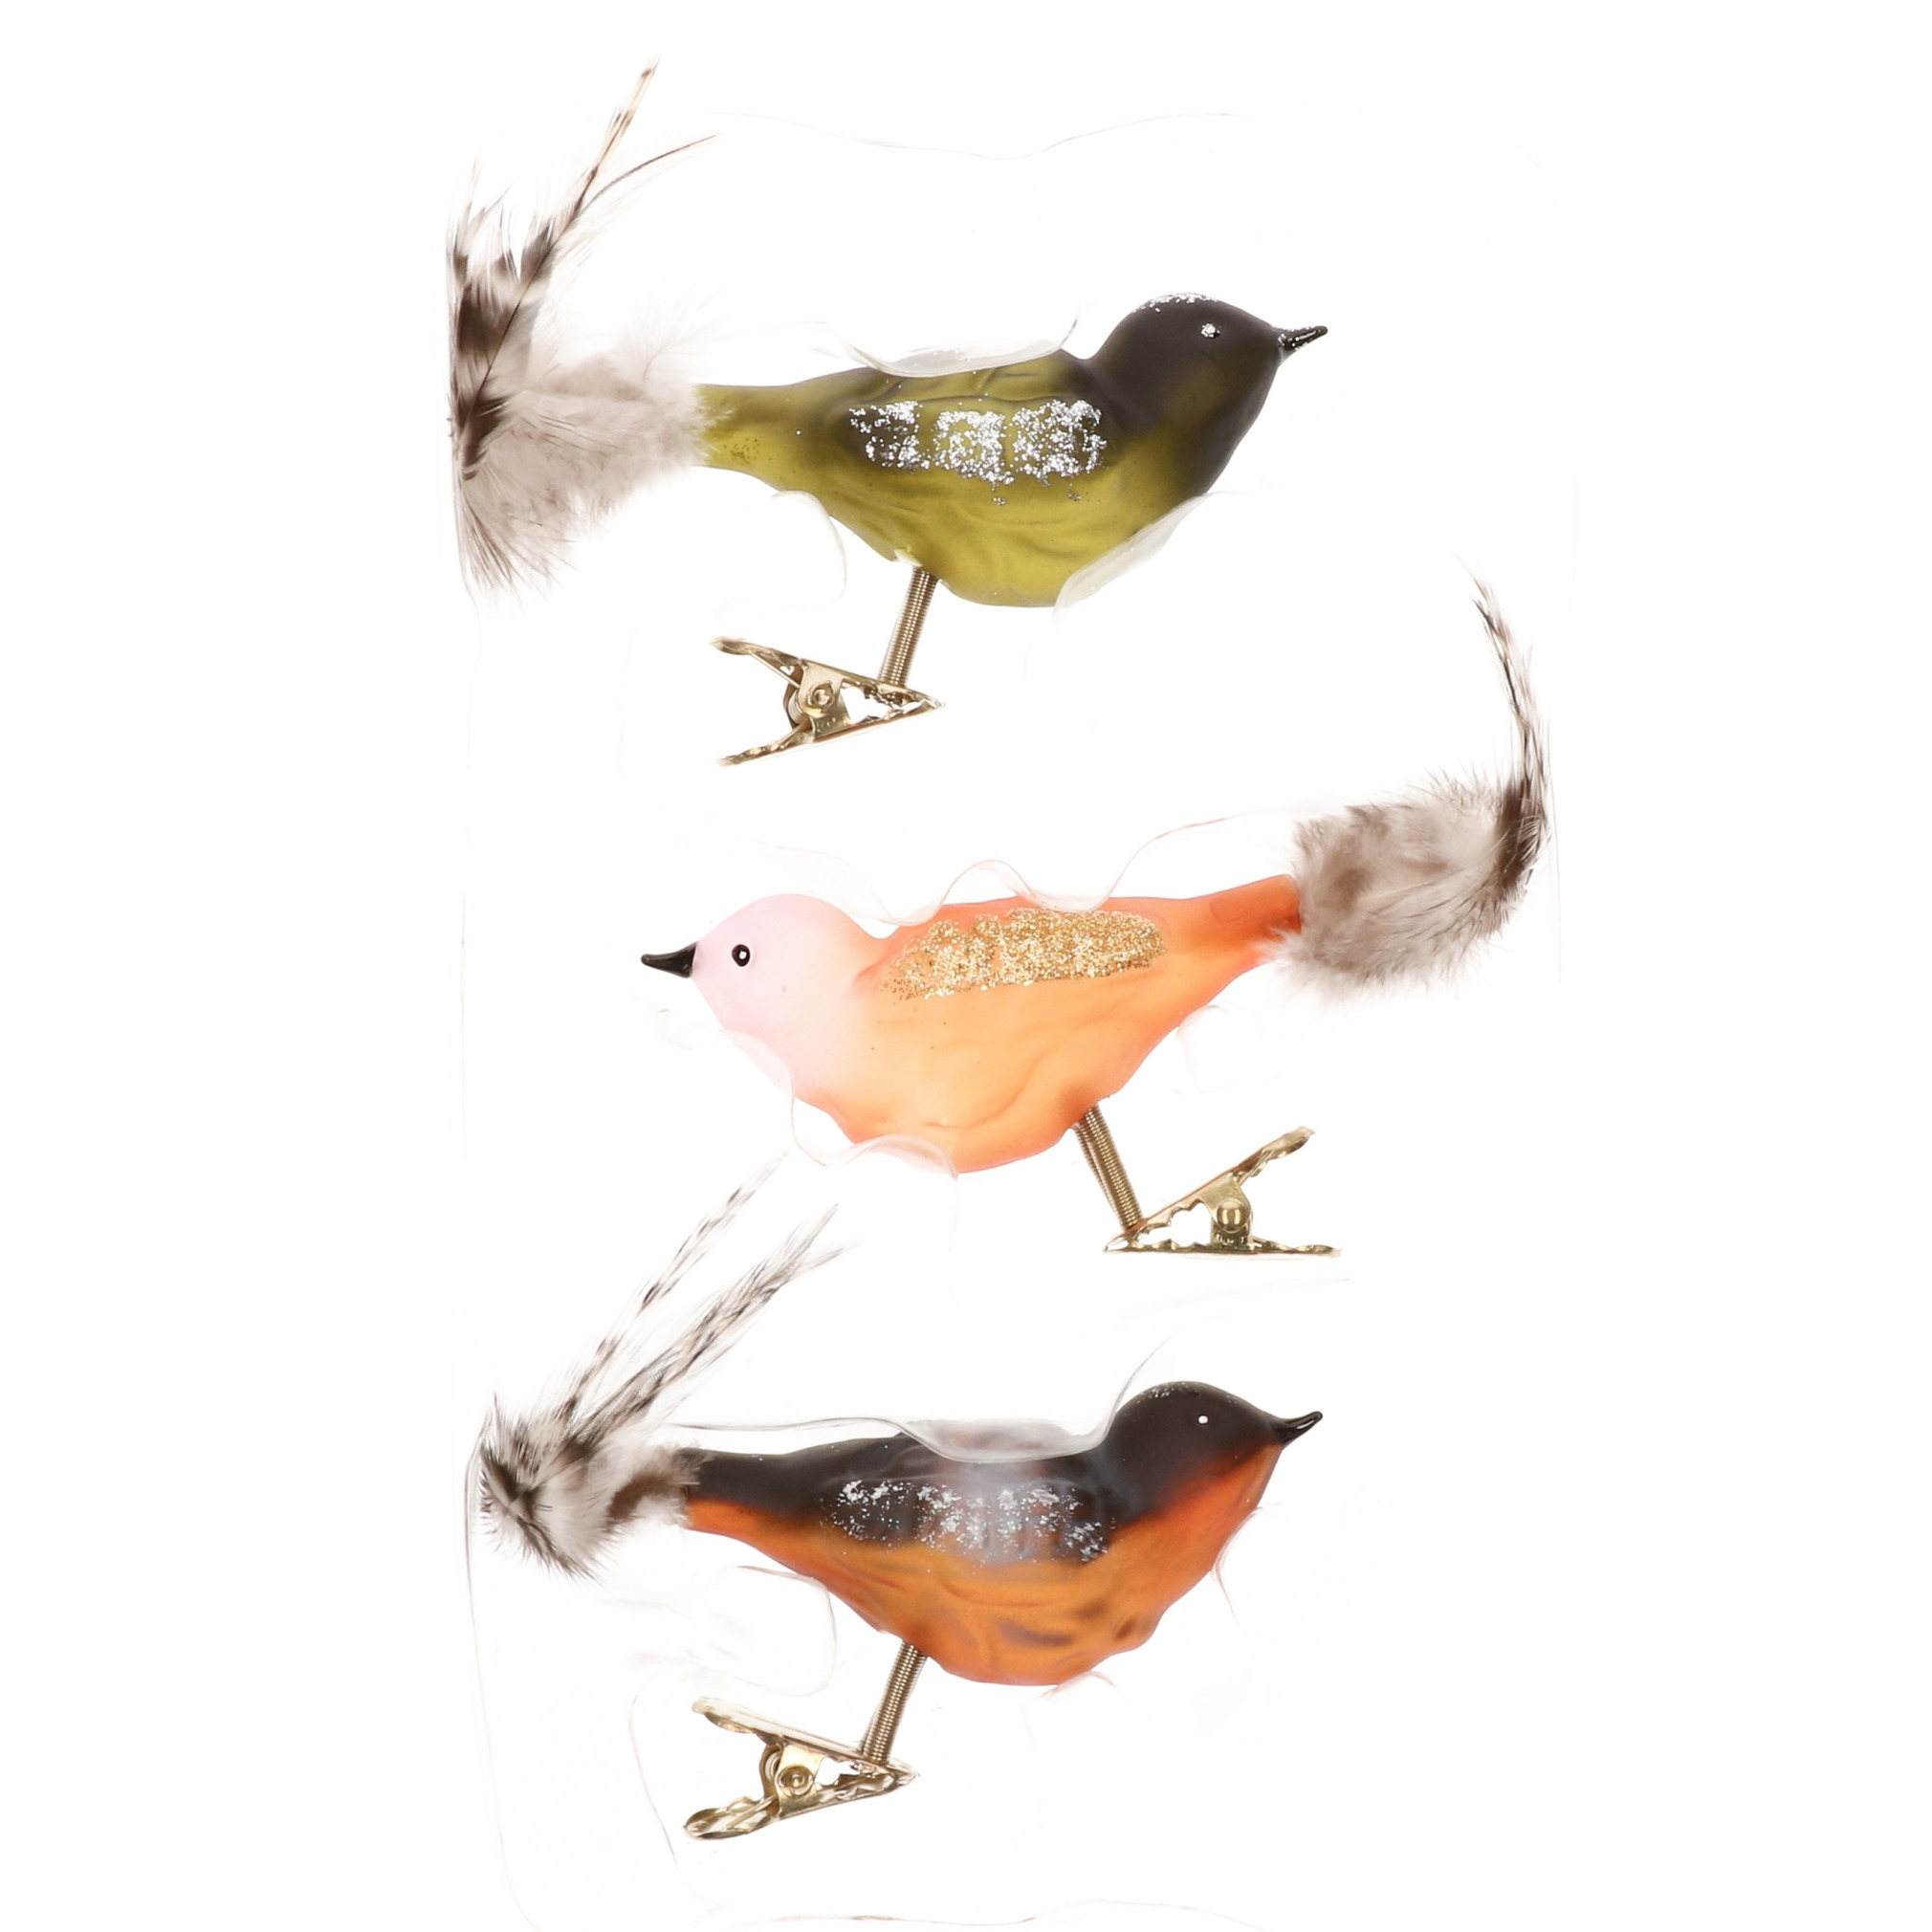 3x stuks luxe glazen decoratie vogels op clip gekleurd 11 cm